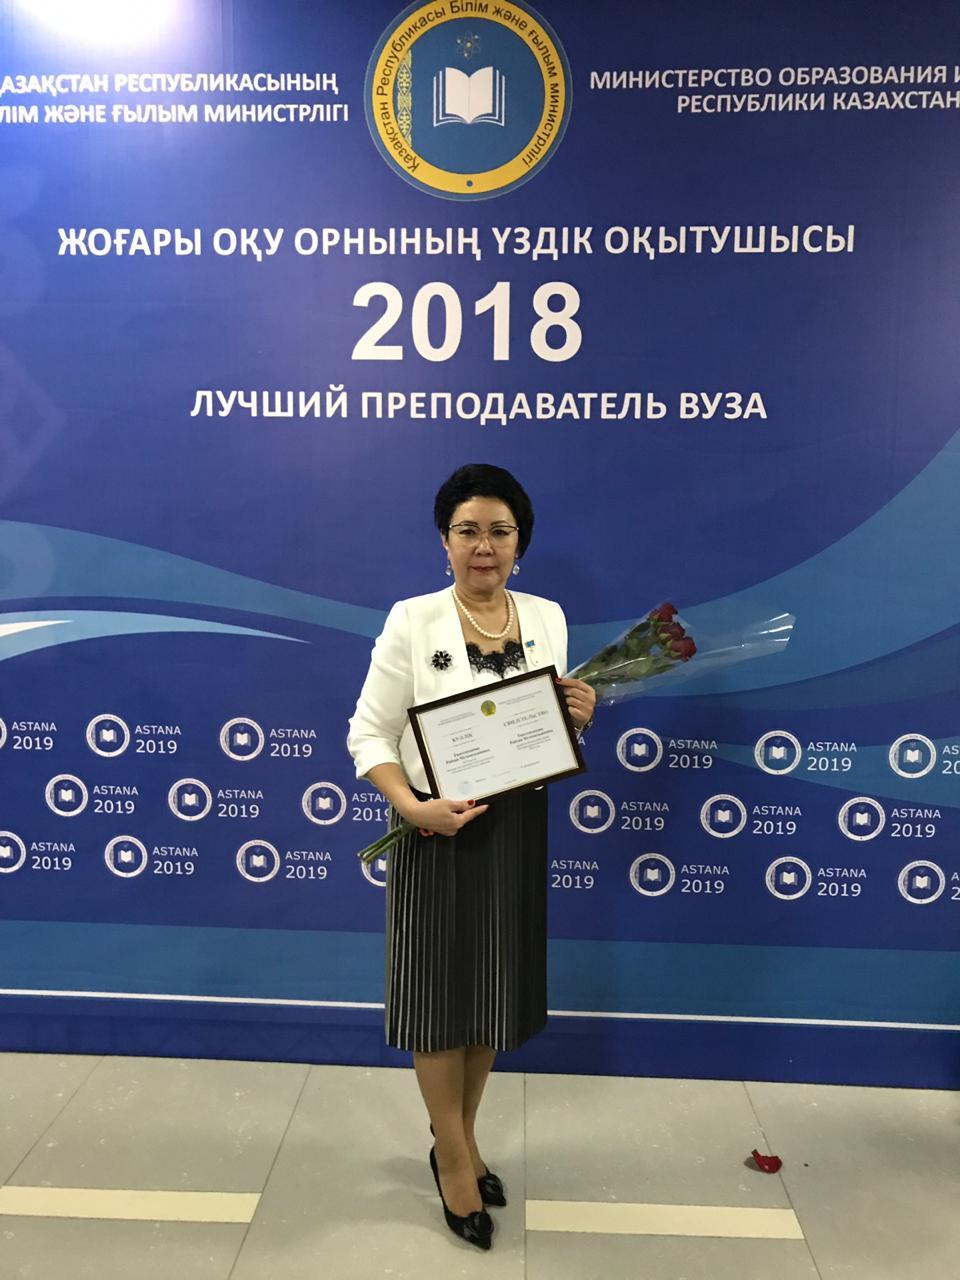 Преподаватель кафедры регионоведения Таштемханова Р.М. - победитель конкурса «Лучший преподаватель вуза» 2018 года